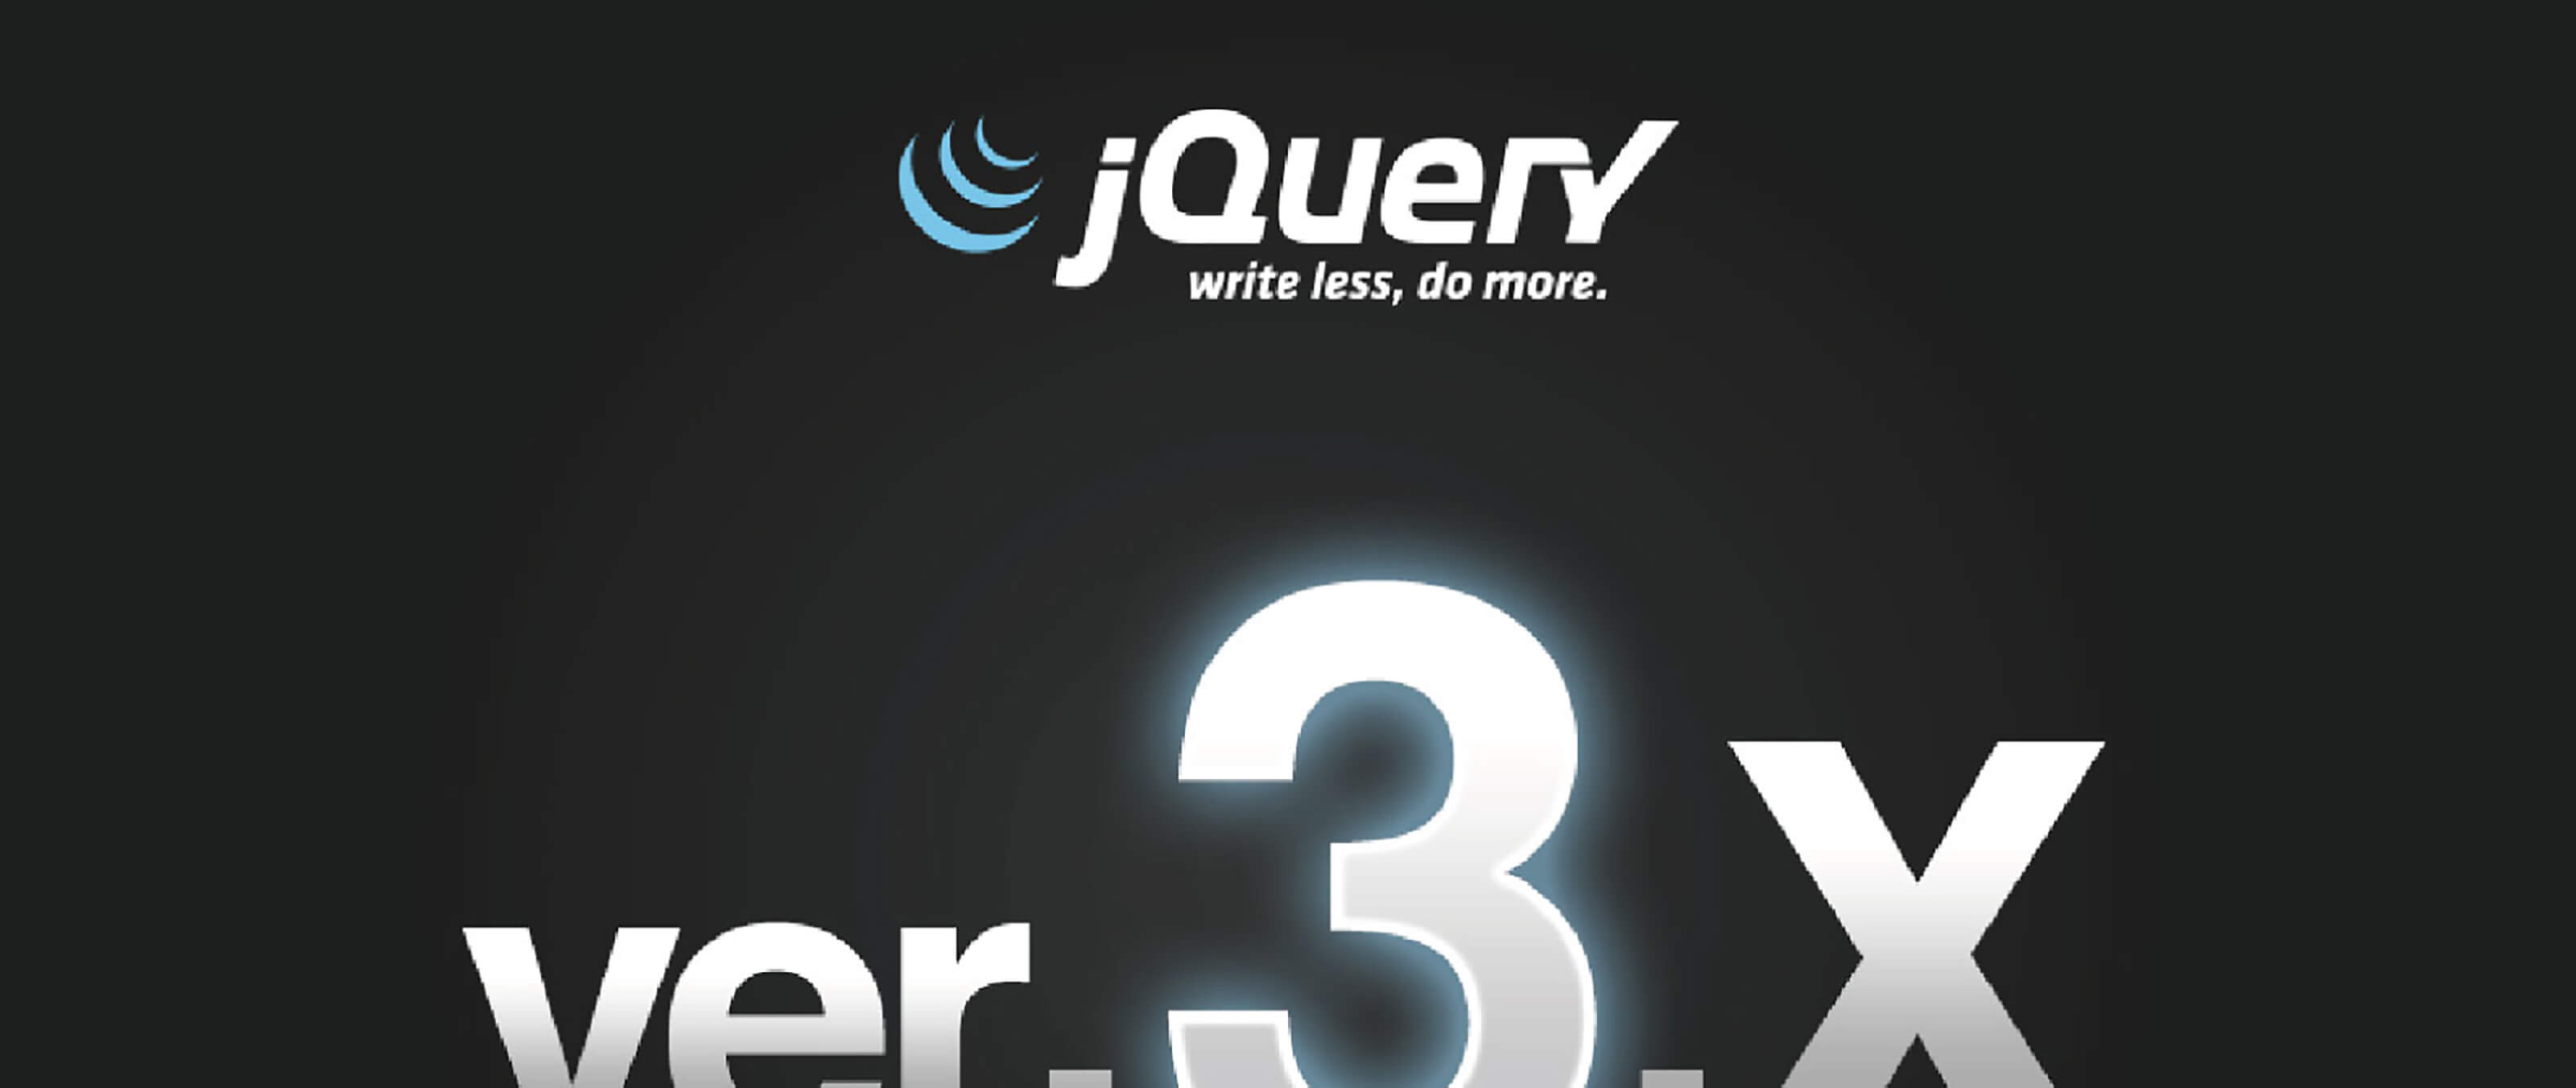 メジャーアップデート 高速化したjquery3 0の特徴 Boel Inc ブランディング デザインファーム